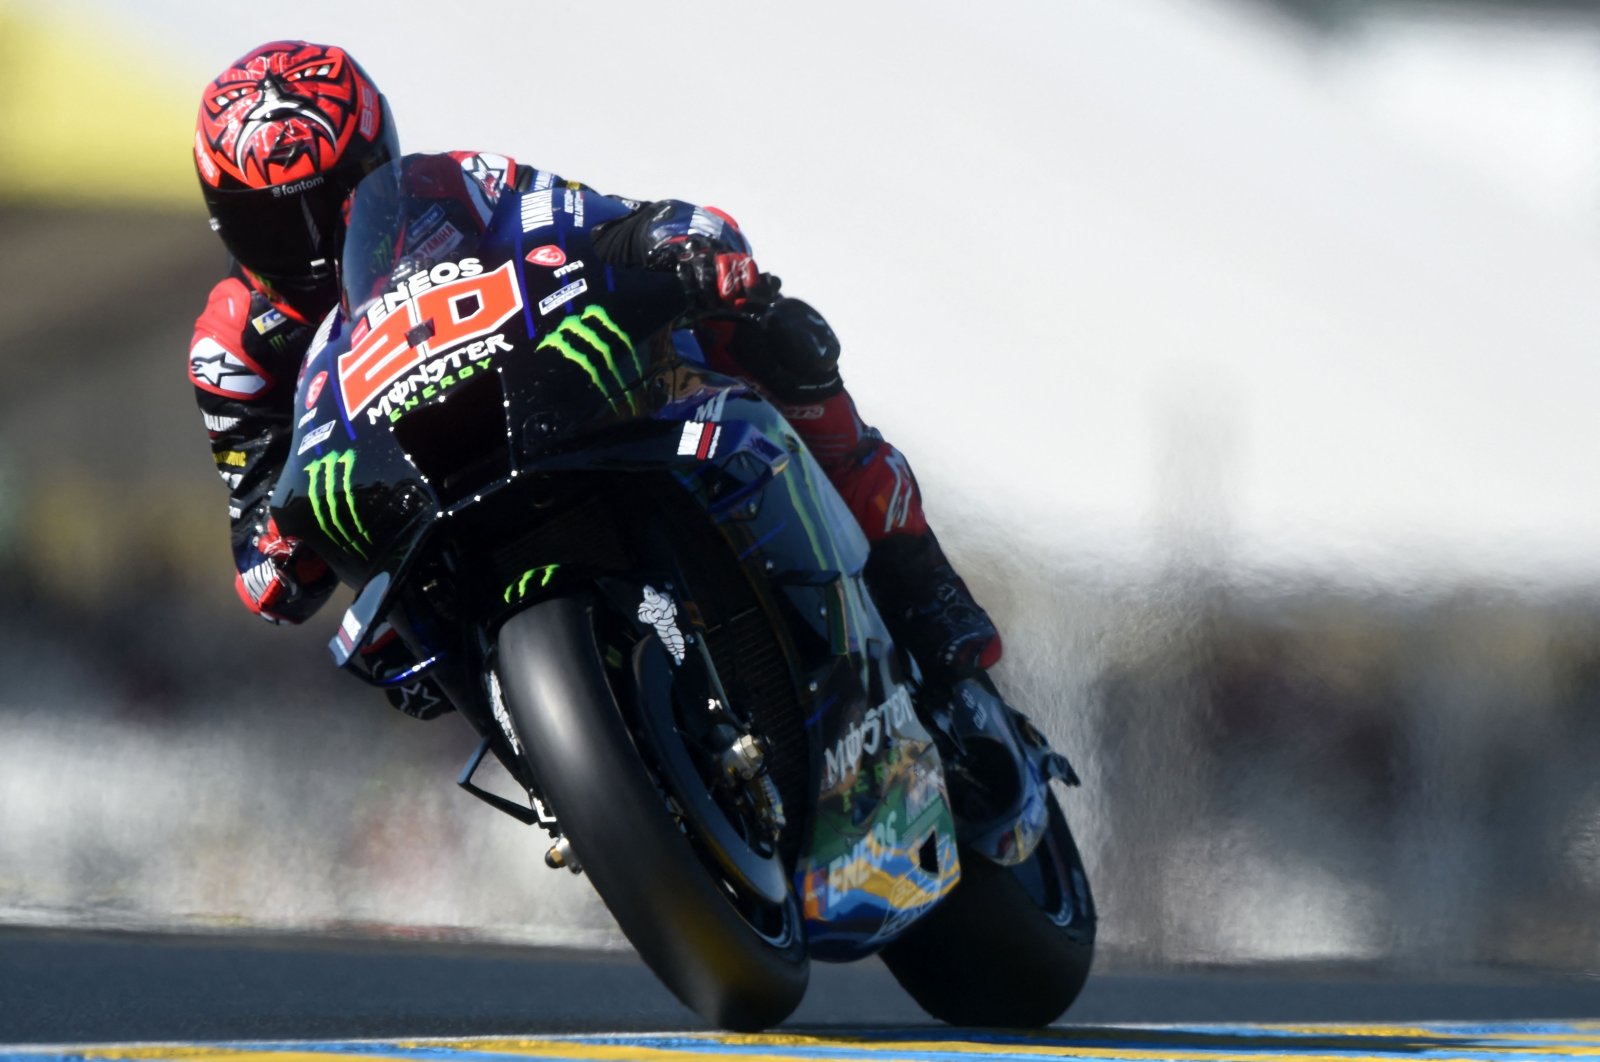 Juara dunia Quartararo berharap kemenangan kandang pertama di MotoGP Prancis